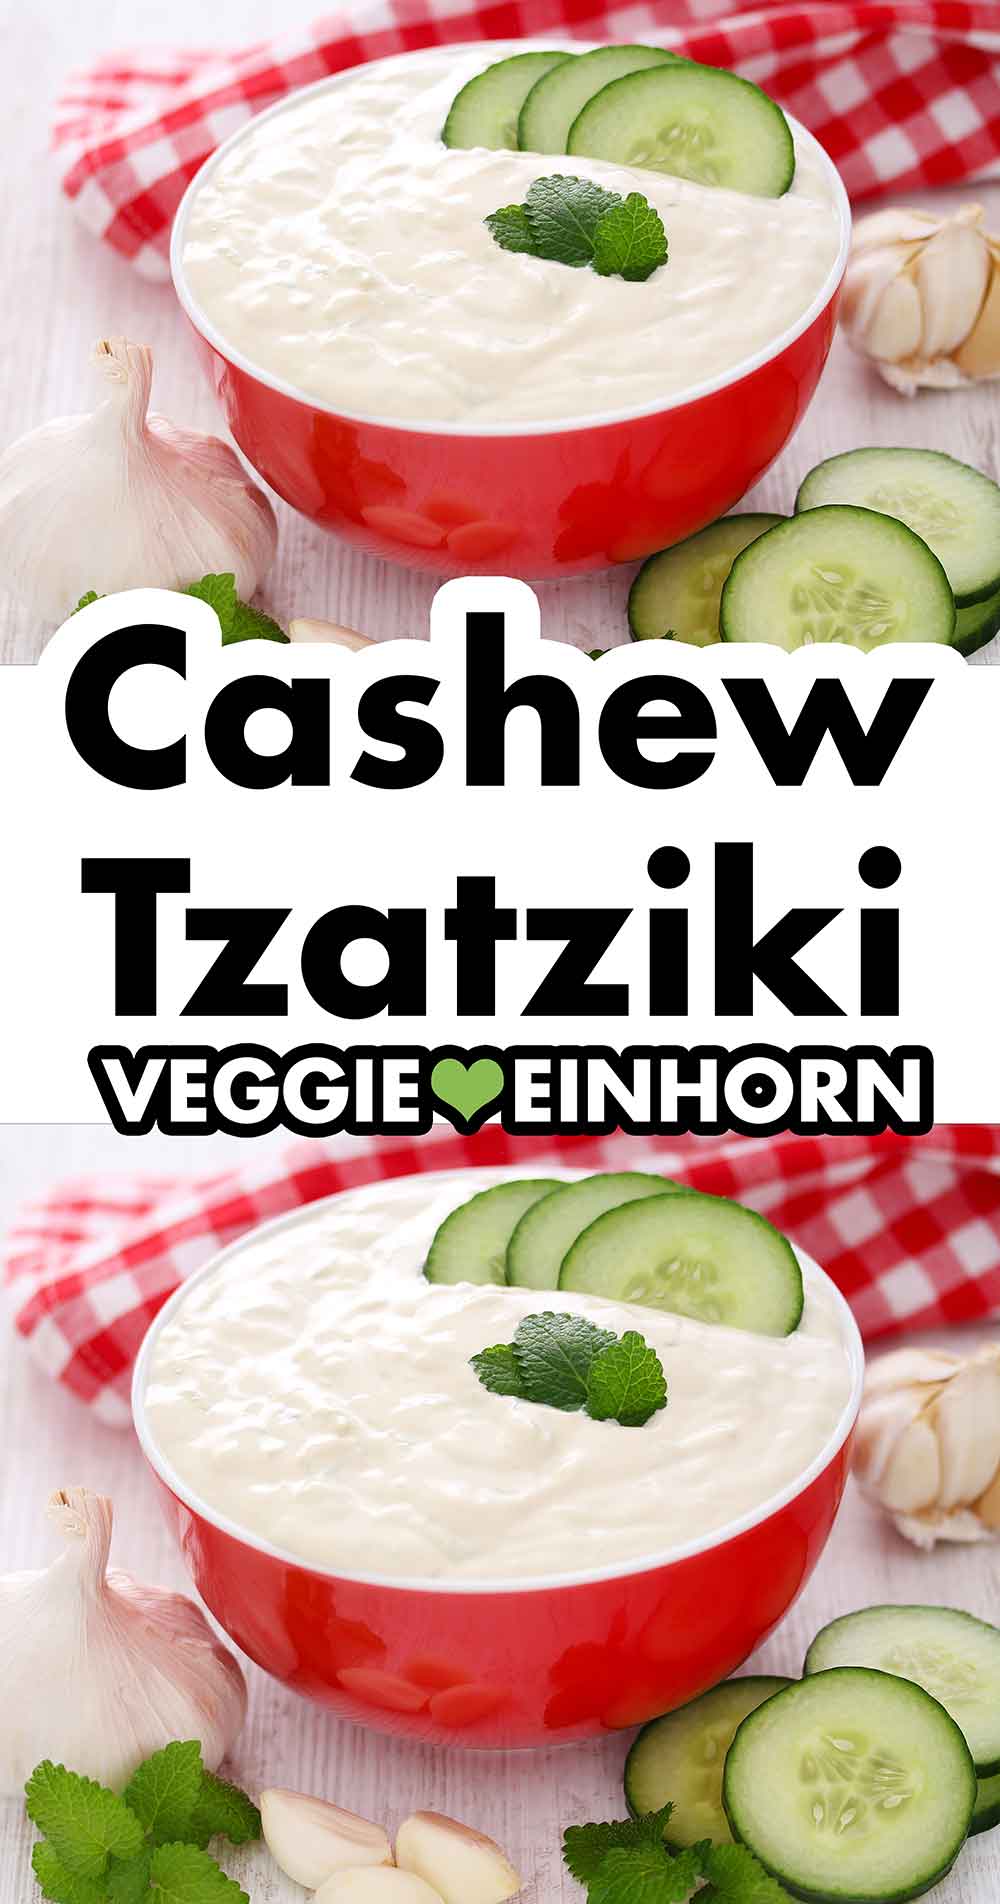 Zaziki vegan aus Cashews und Tofu